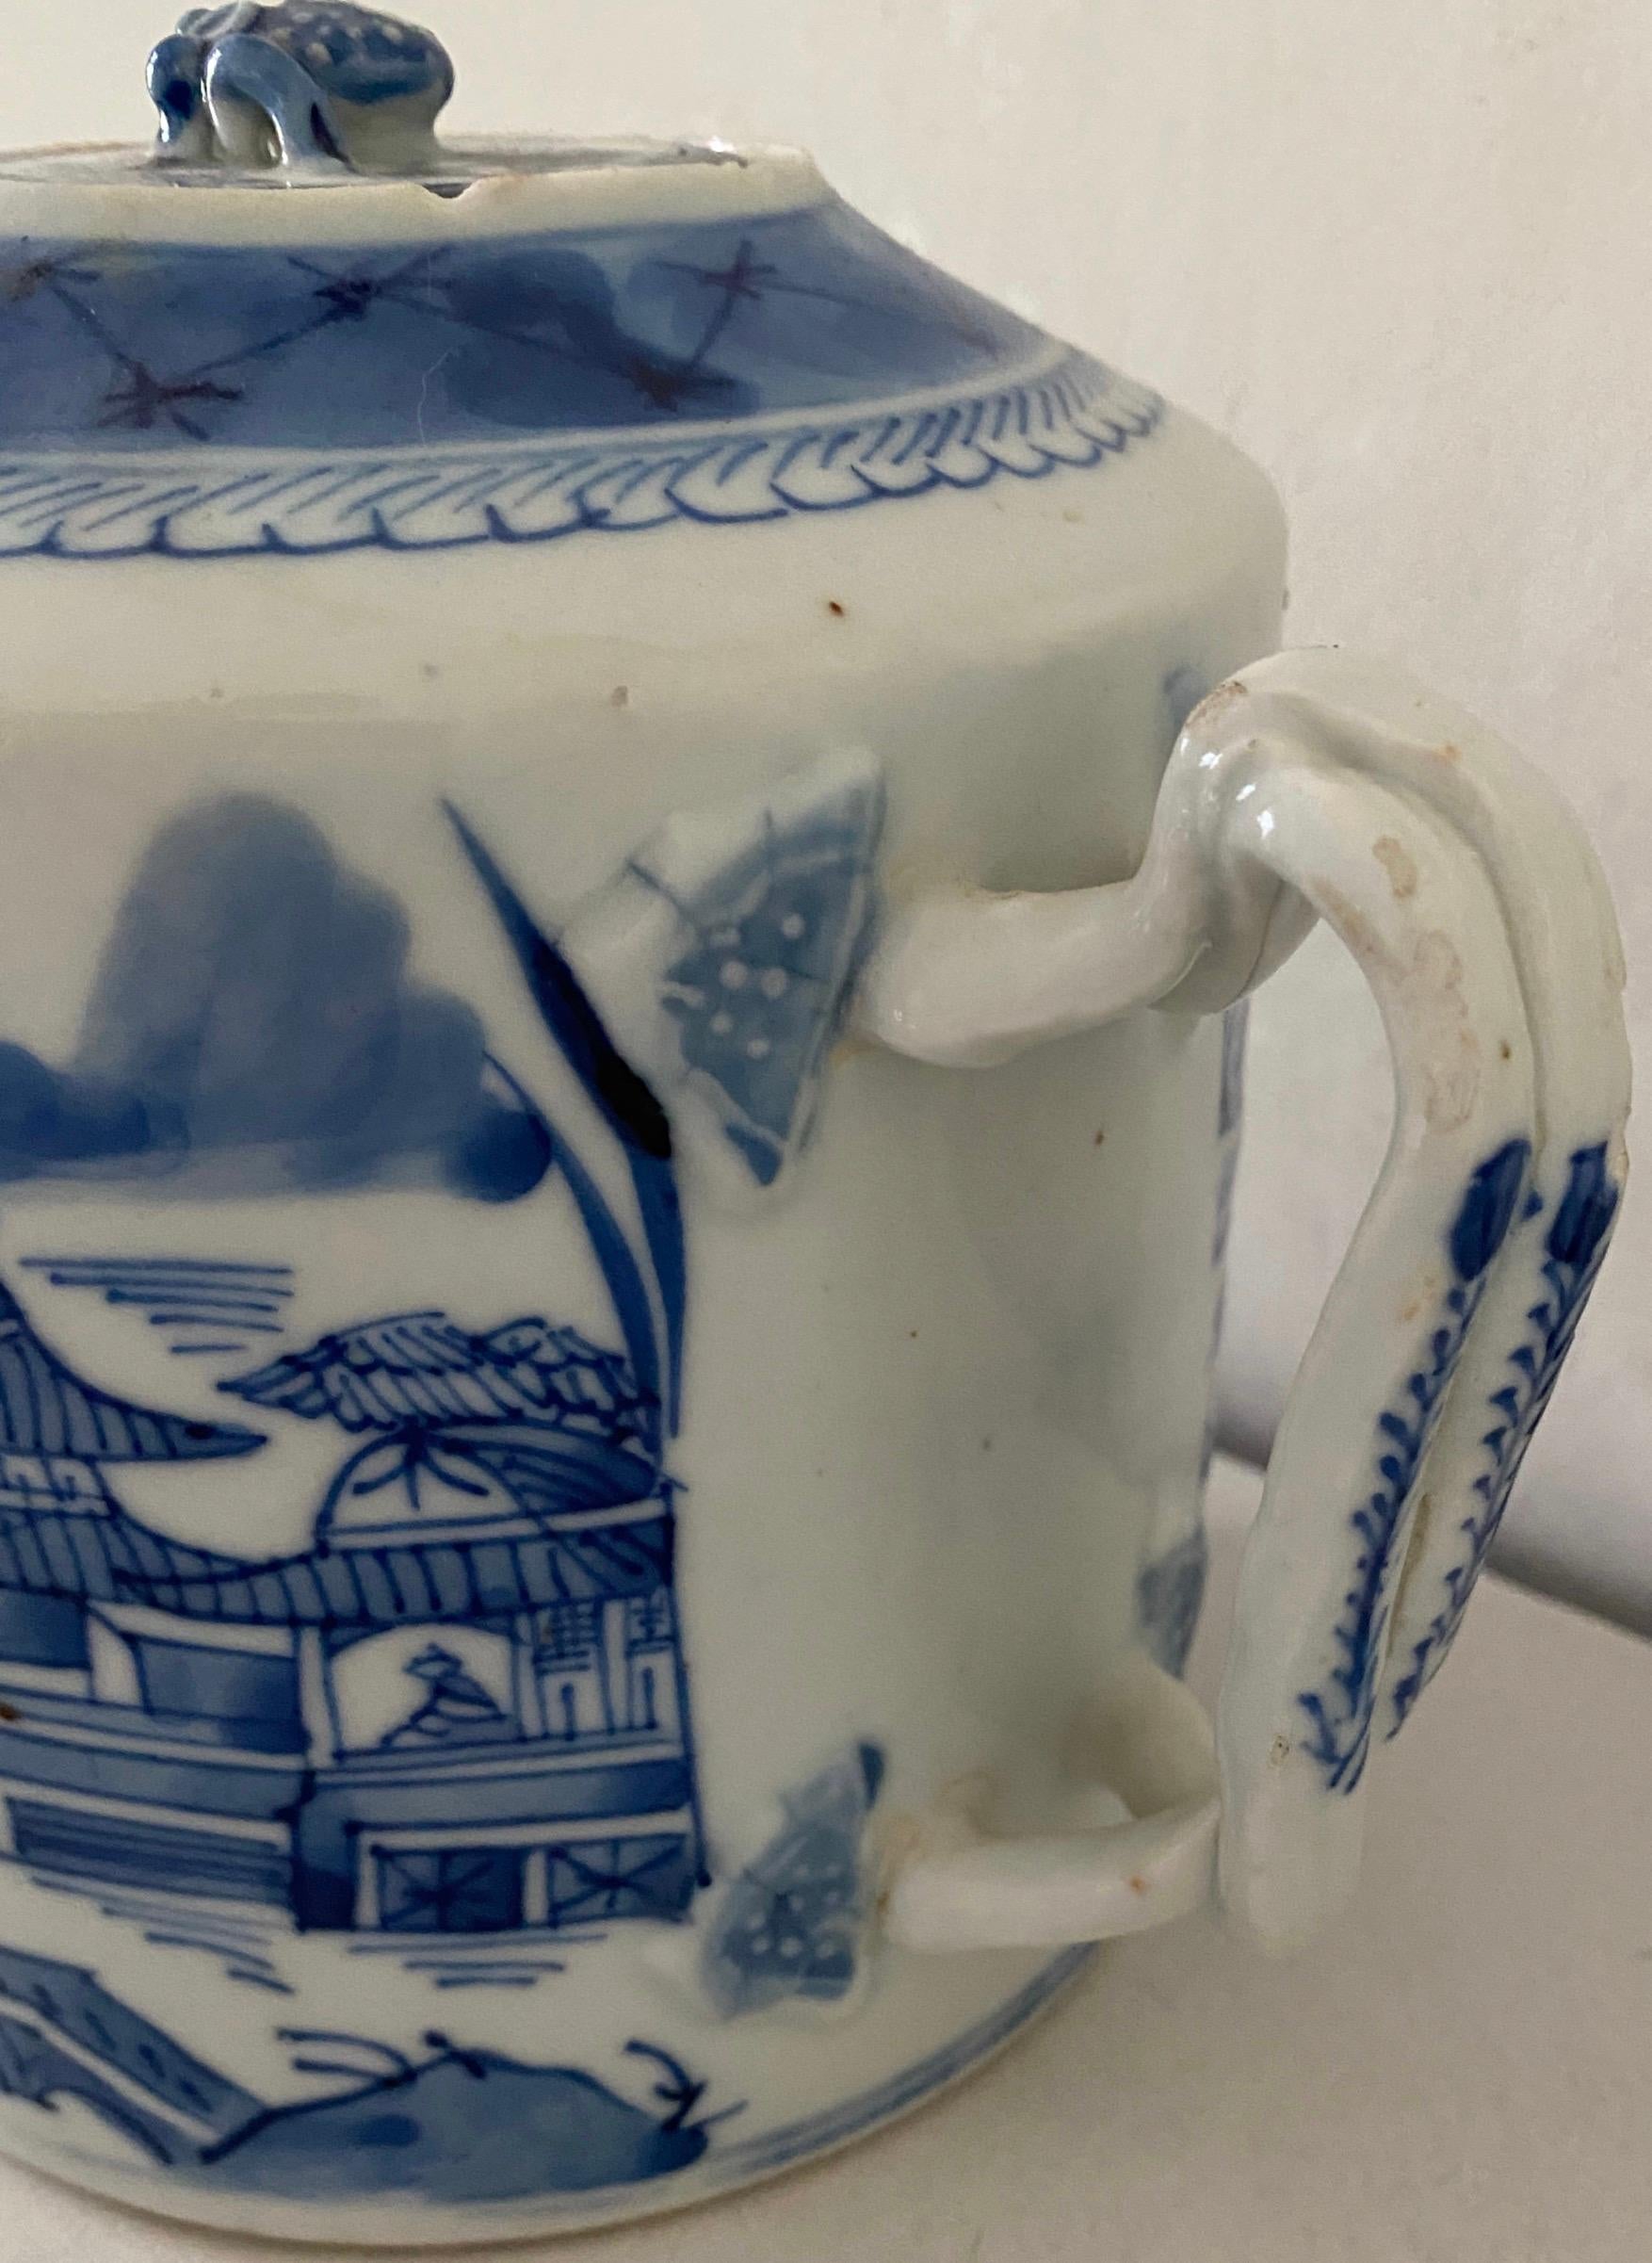 Die antike blau-weiße chinesische Teekanne aus feinem Knochenporzellan hat einen langen Ausguss mit handgemaltem szenischem Muster. Genießen Sie eine Tasse Tee in dieser antiken chinesischen Teekanne und genießen Sie den feinen Geschmack Ihres Tees.